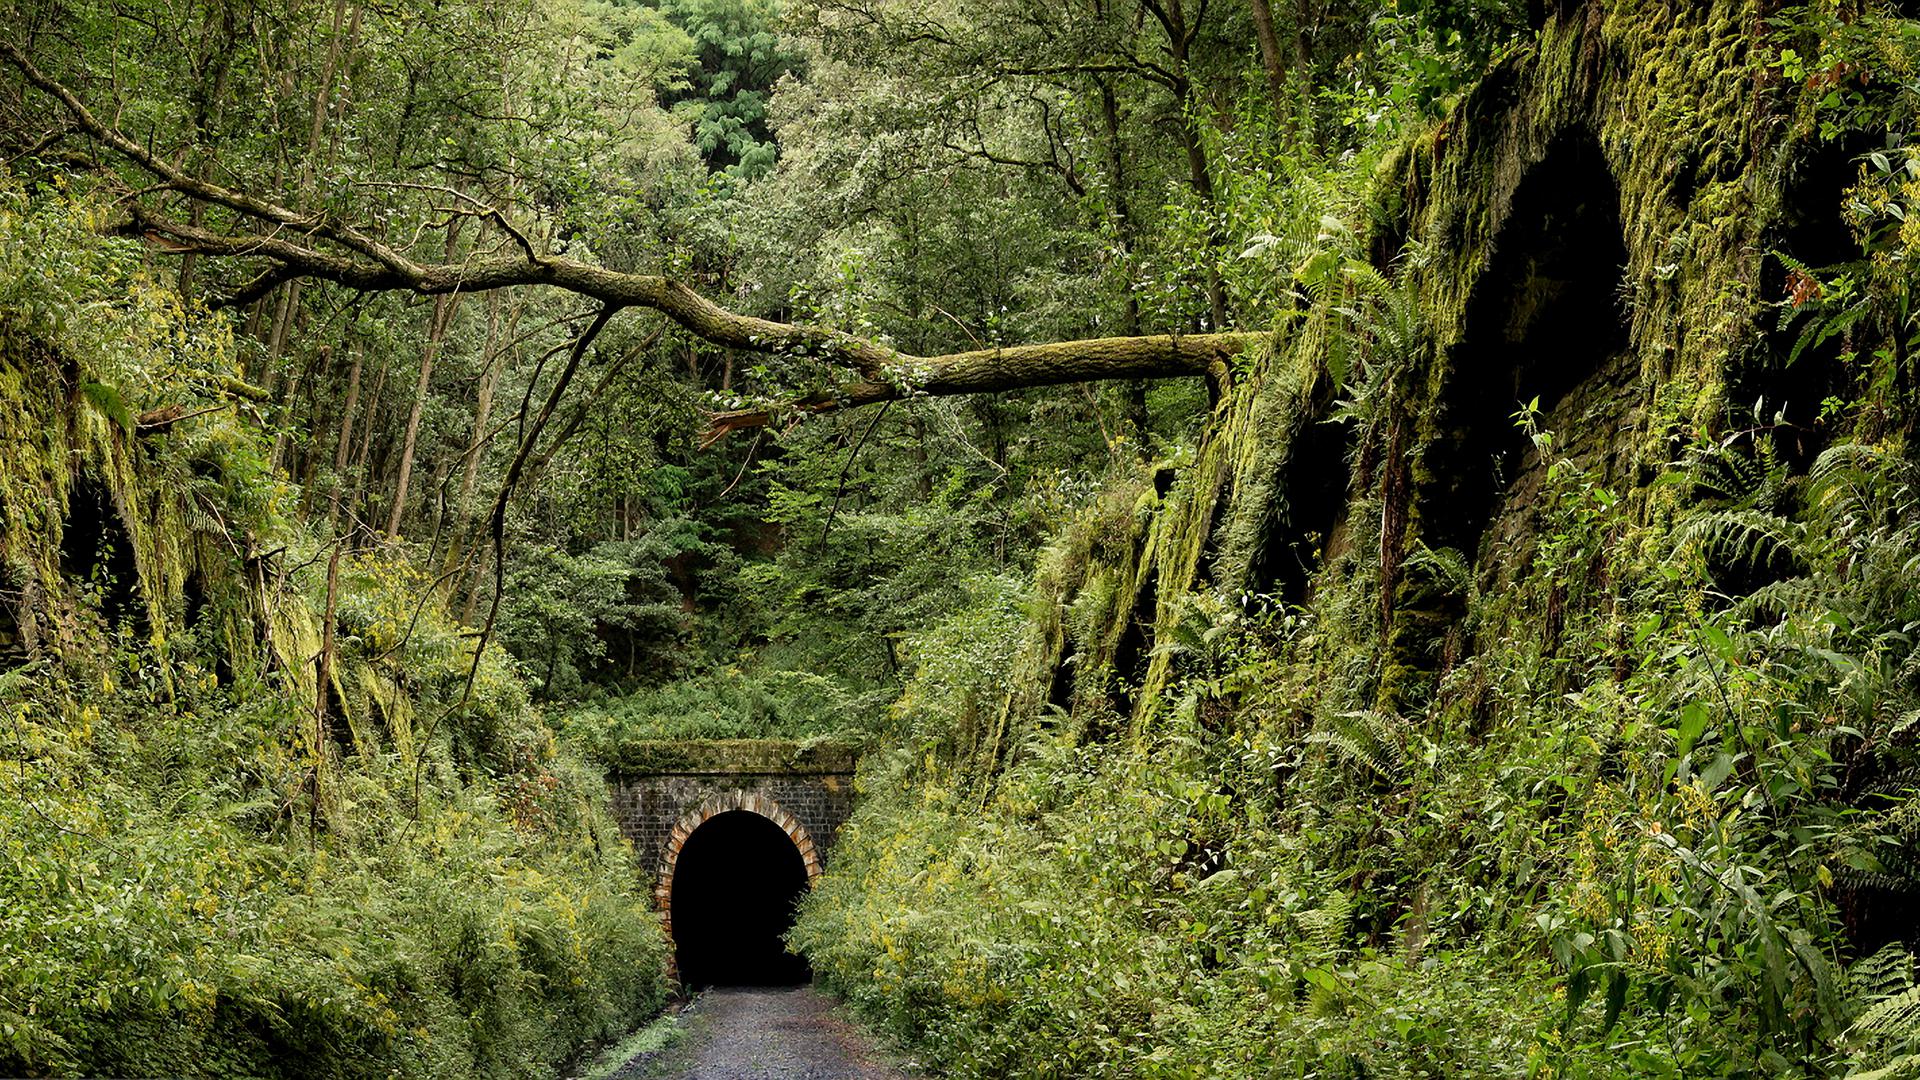 L'intérieur du tunnel offre aux chauves-souris des conditions de vie idéales. Mais nul visiteur humain n'y est autorisé.